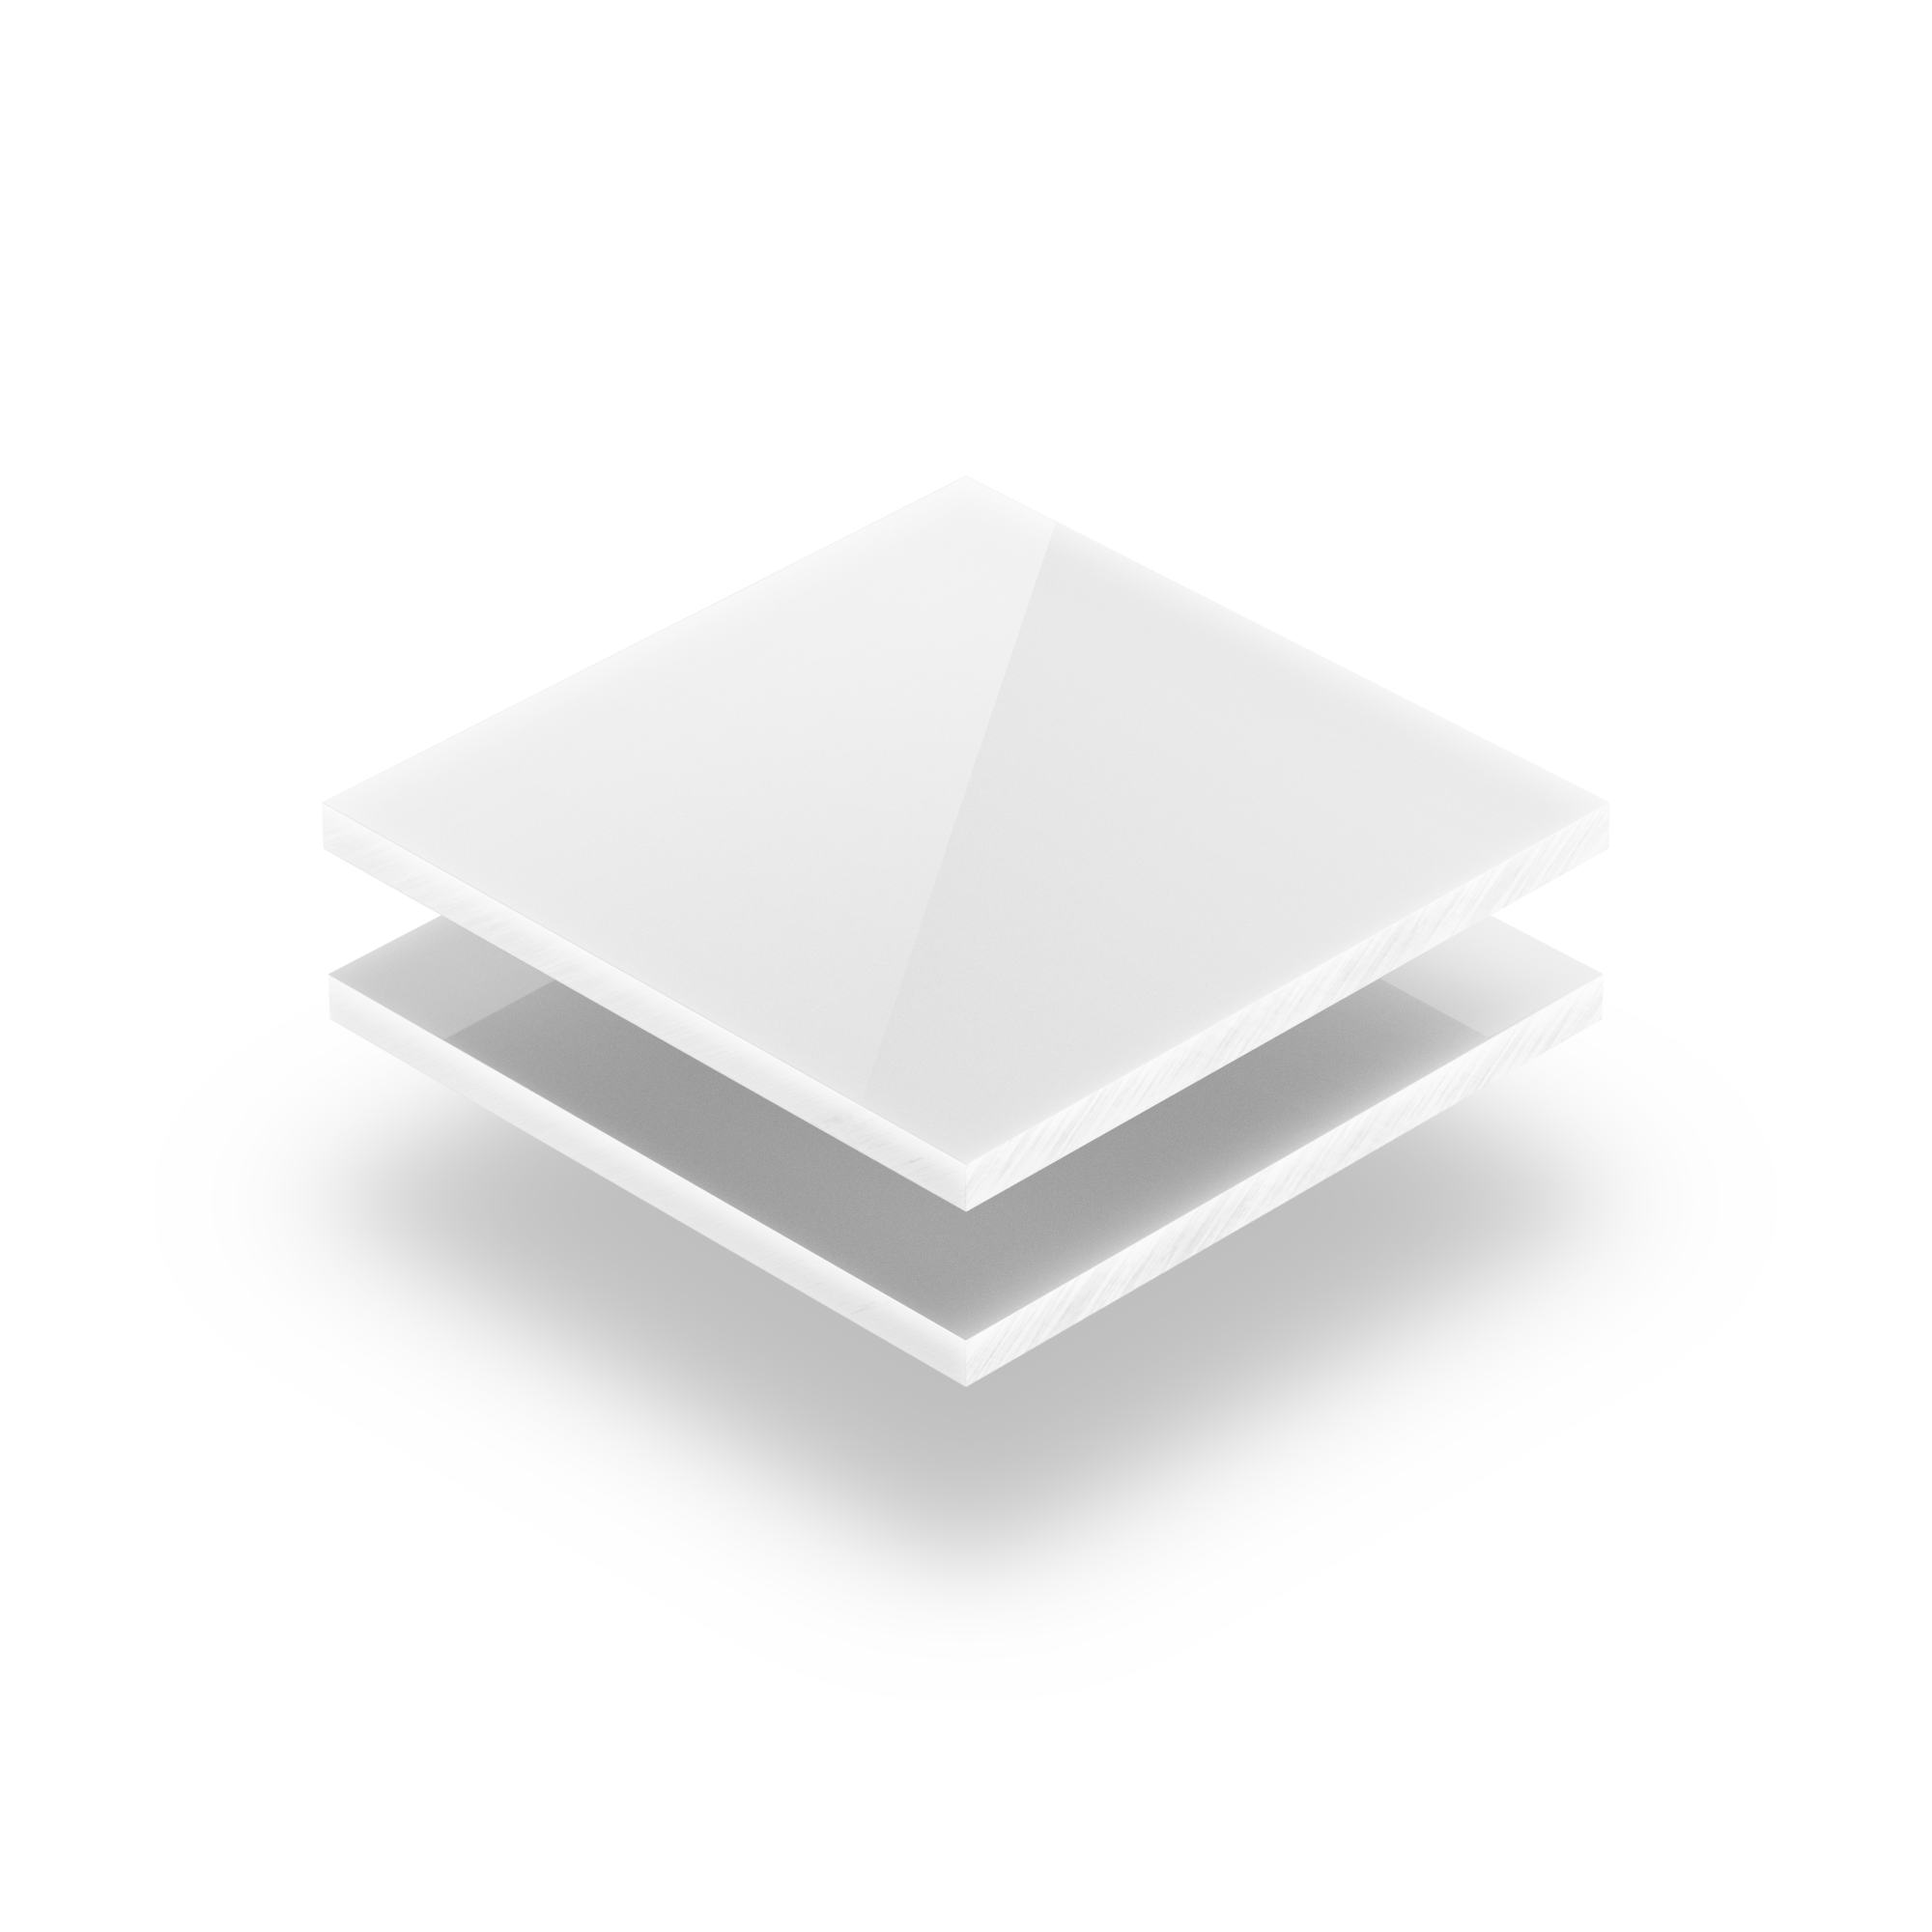 Plaque Plexiglass Noir 5mm sur Mesure - 100% Opaque - Brillant